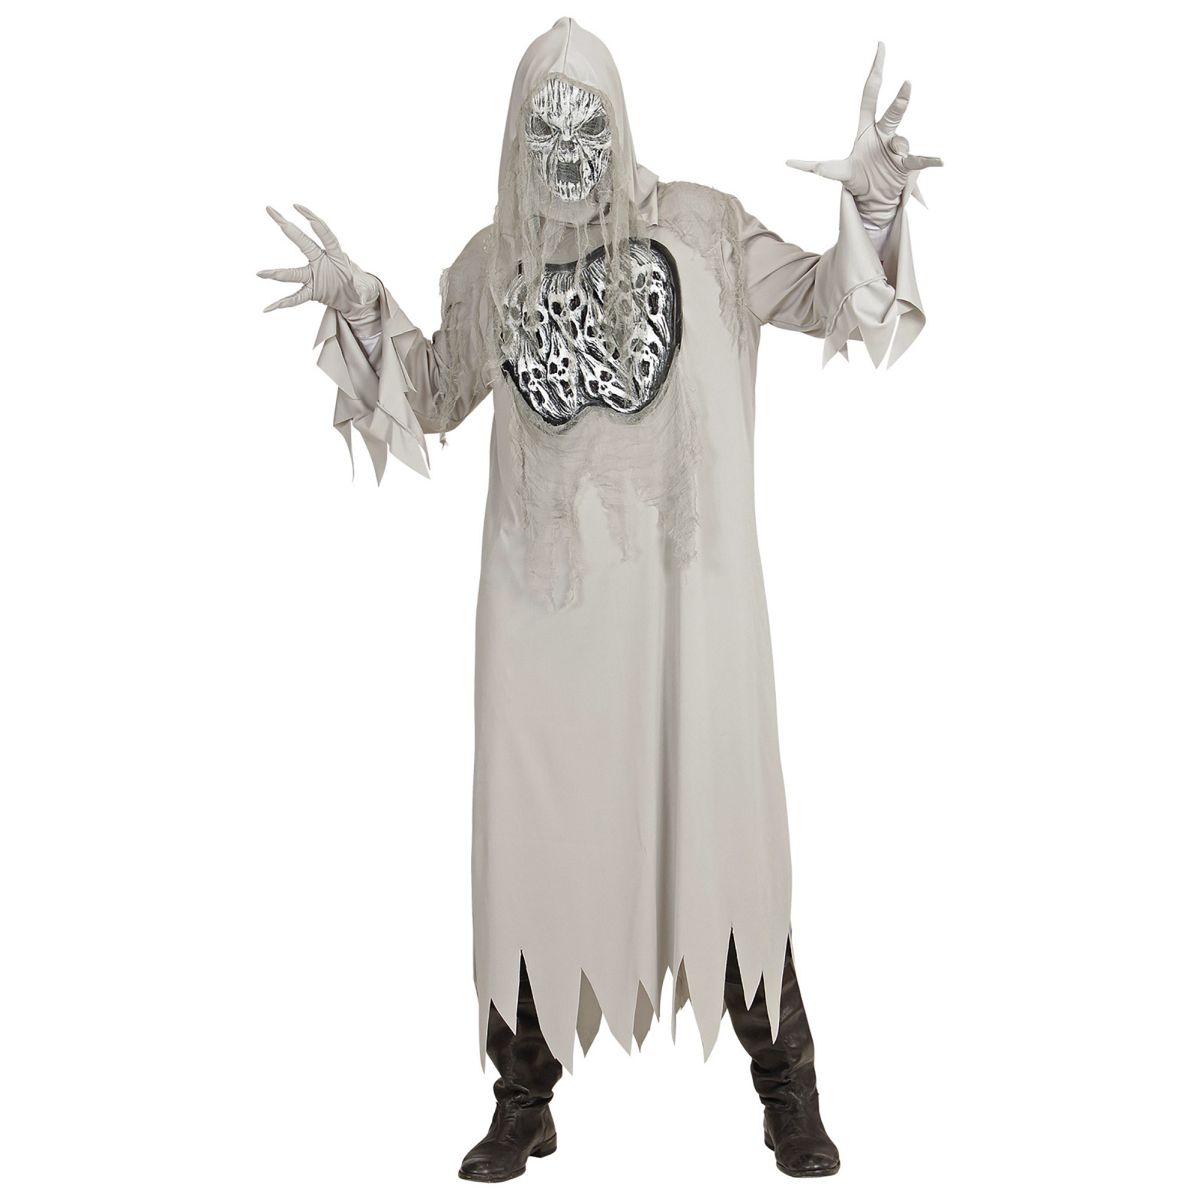 Heulender Geist, Geisterkostüm Geistkostüm Robe mit Kapuze, Handschuhe, Maske 